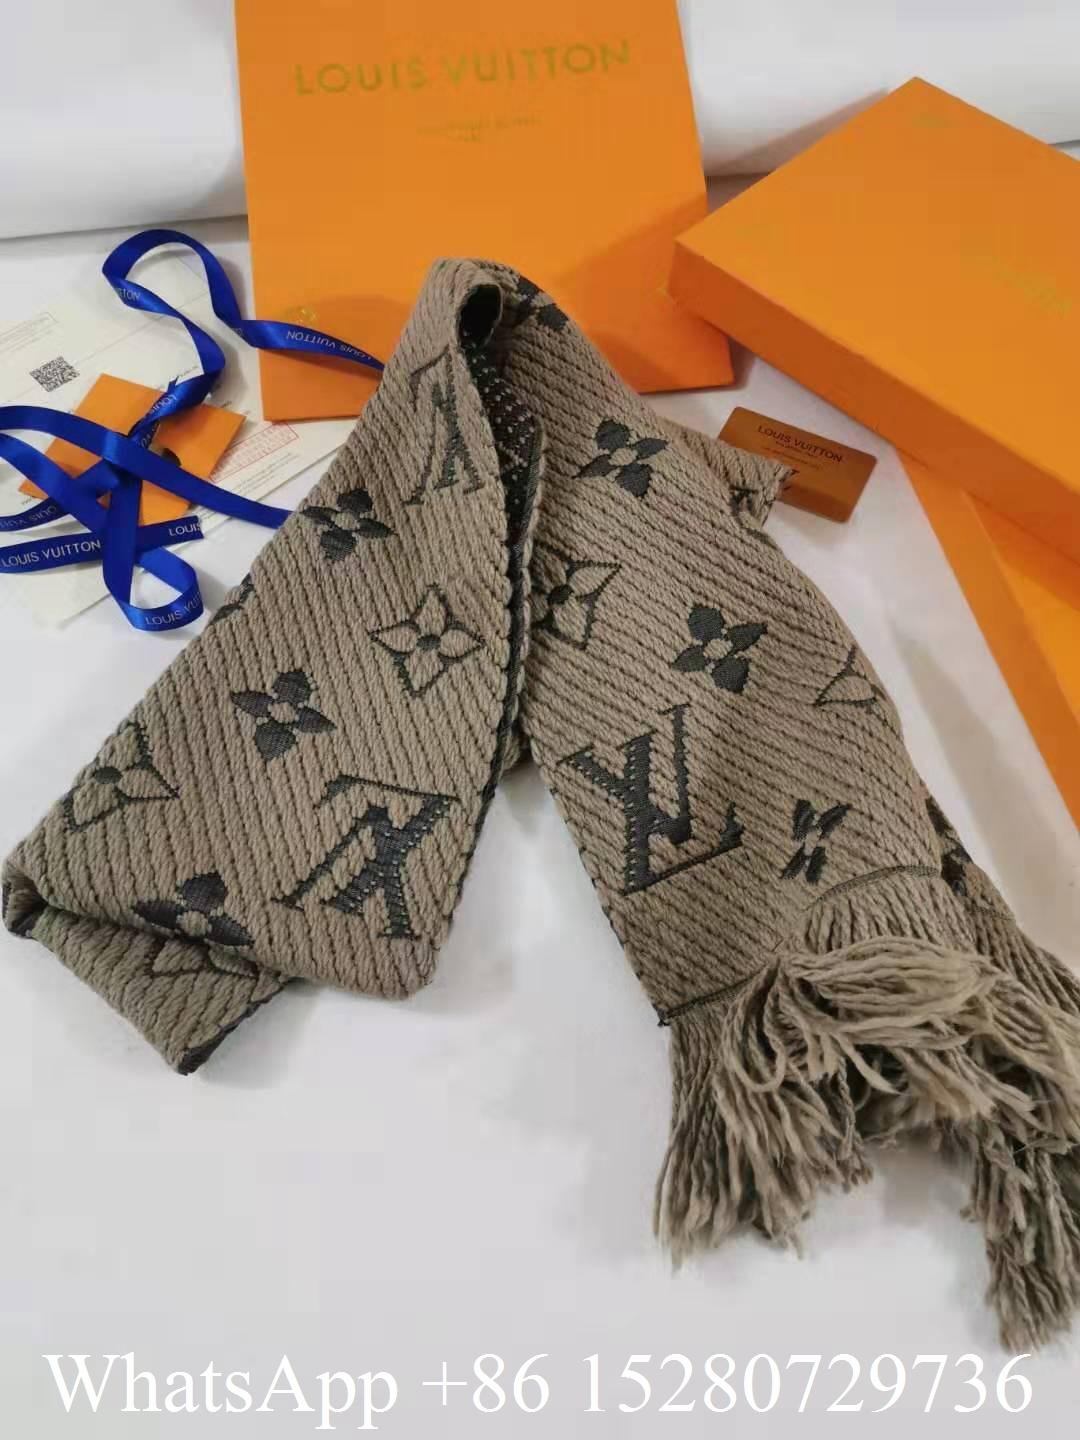 Cheap Louis vuitton scarf Replica lv scarf logomania scarf vuitton monogram scar (China ...